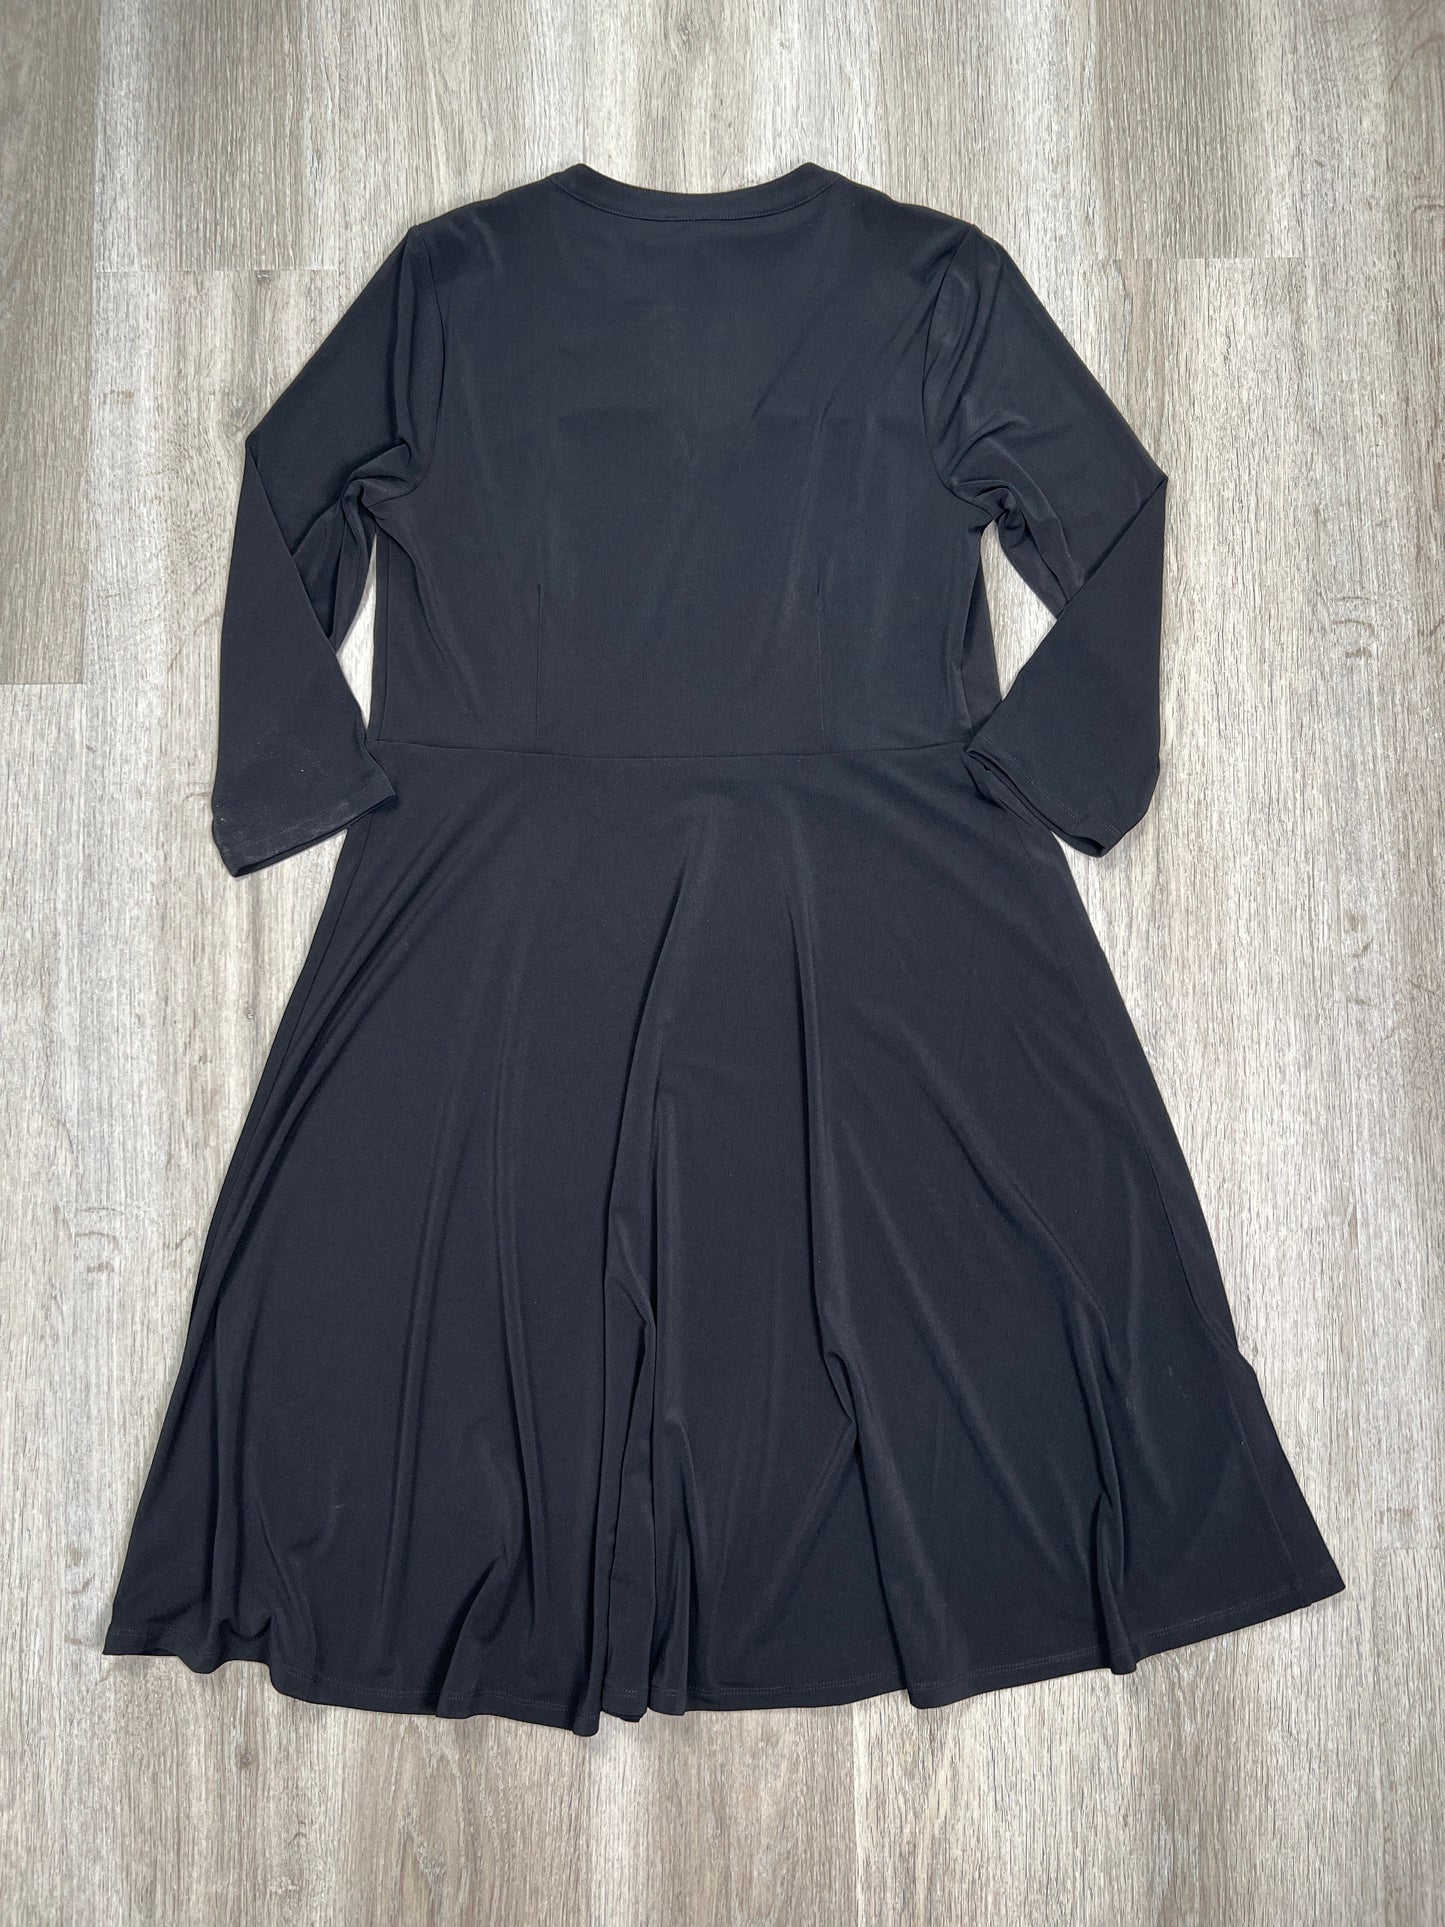 Black Dress Casual Midi Talbots, Size L